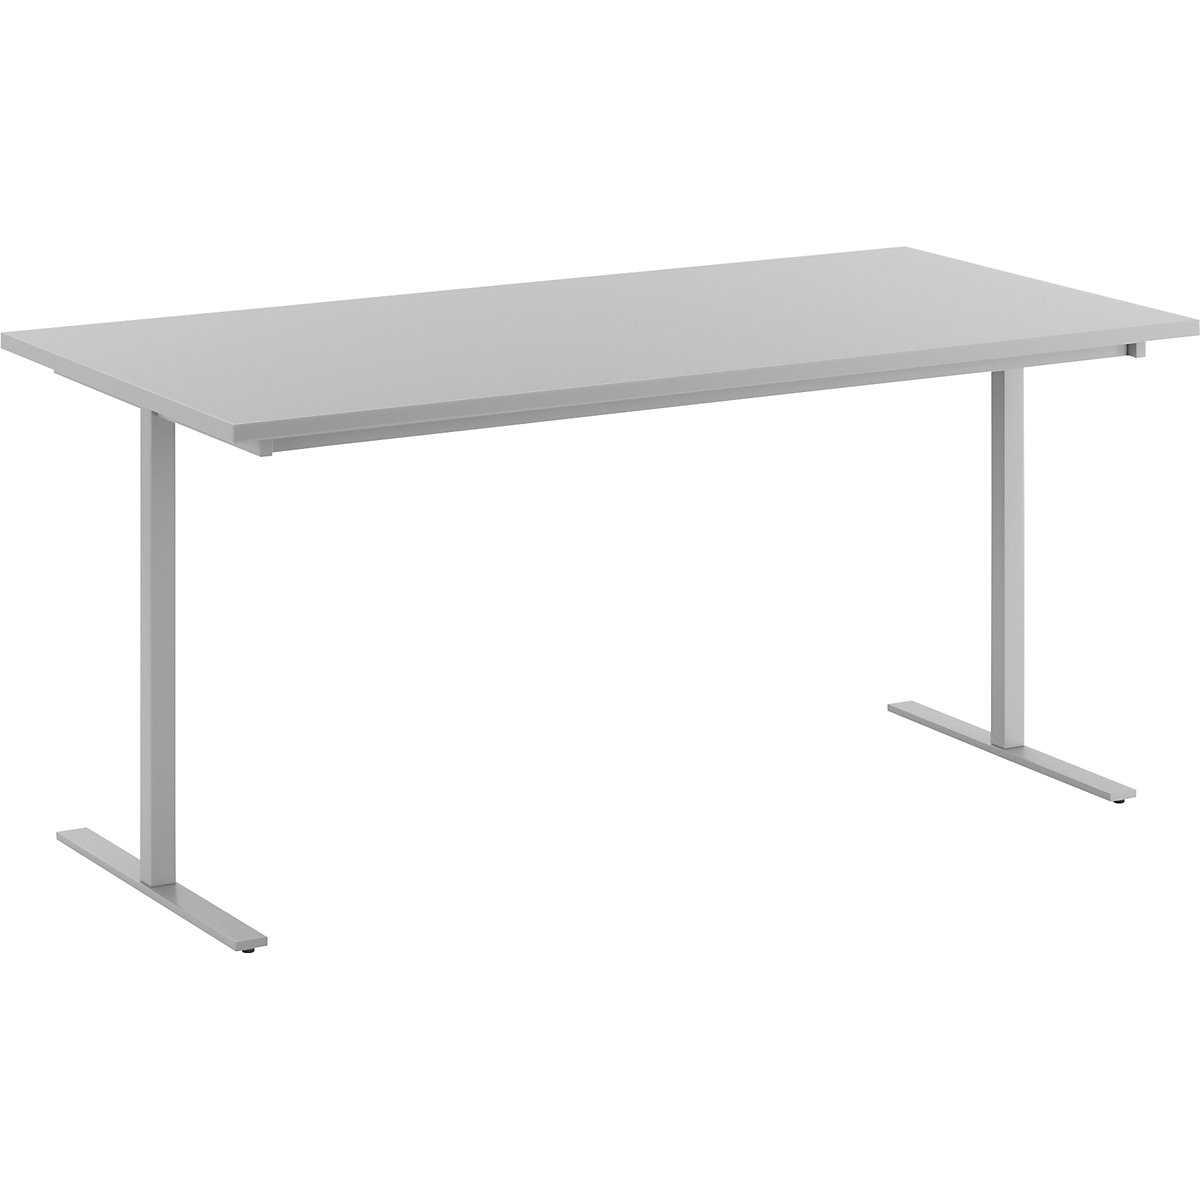 DUO-T multi-purpose desk, straight tabletop